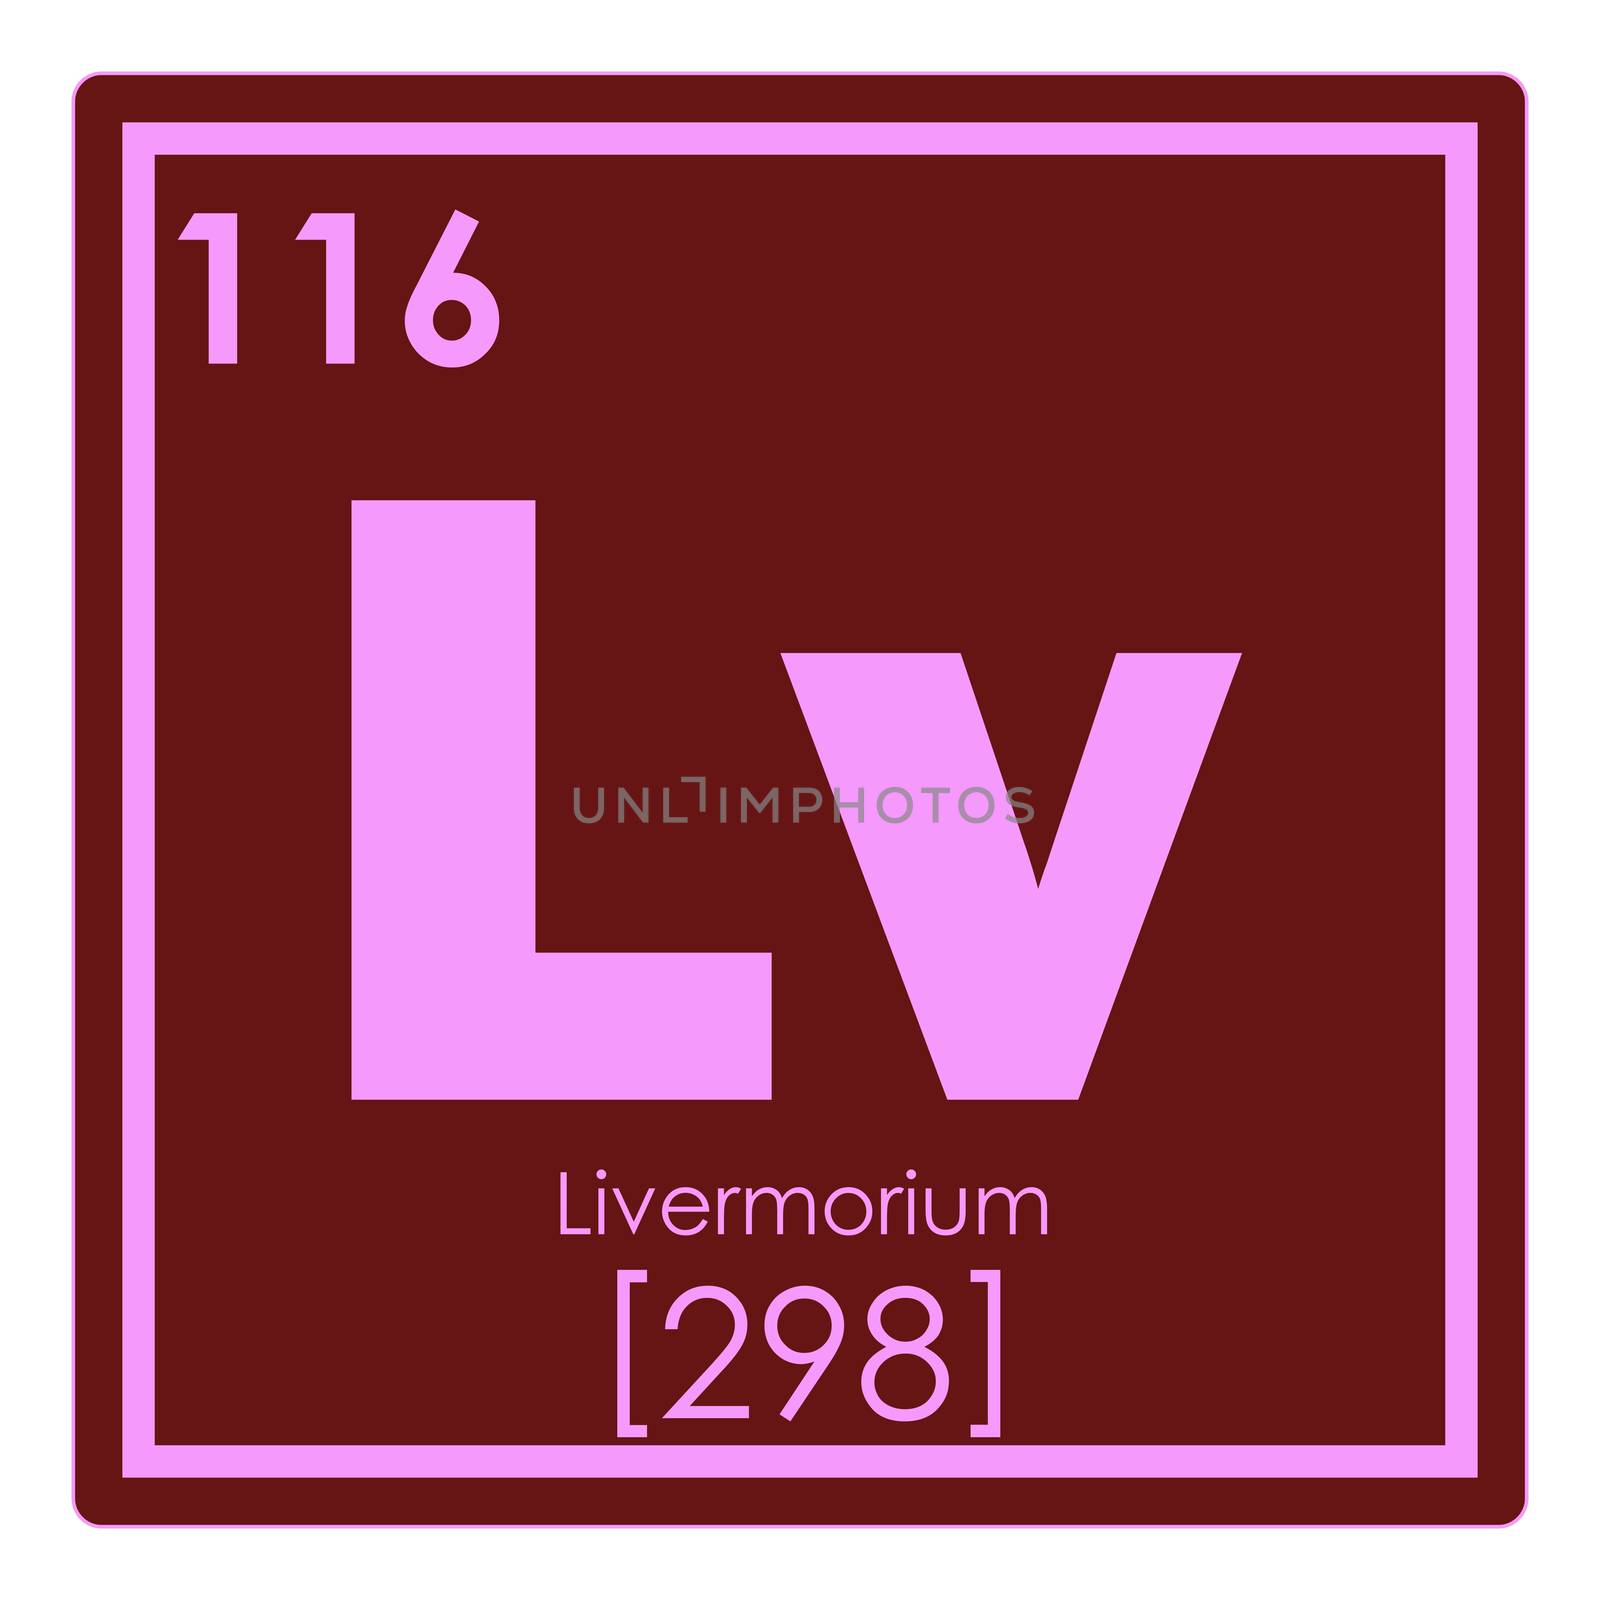 Livermorium chemical element periodic table science symbol